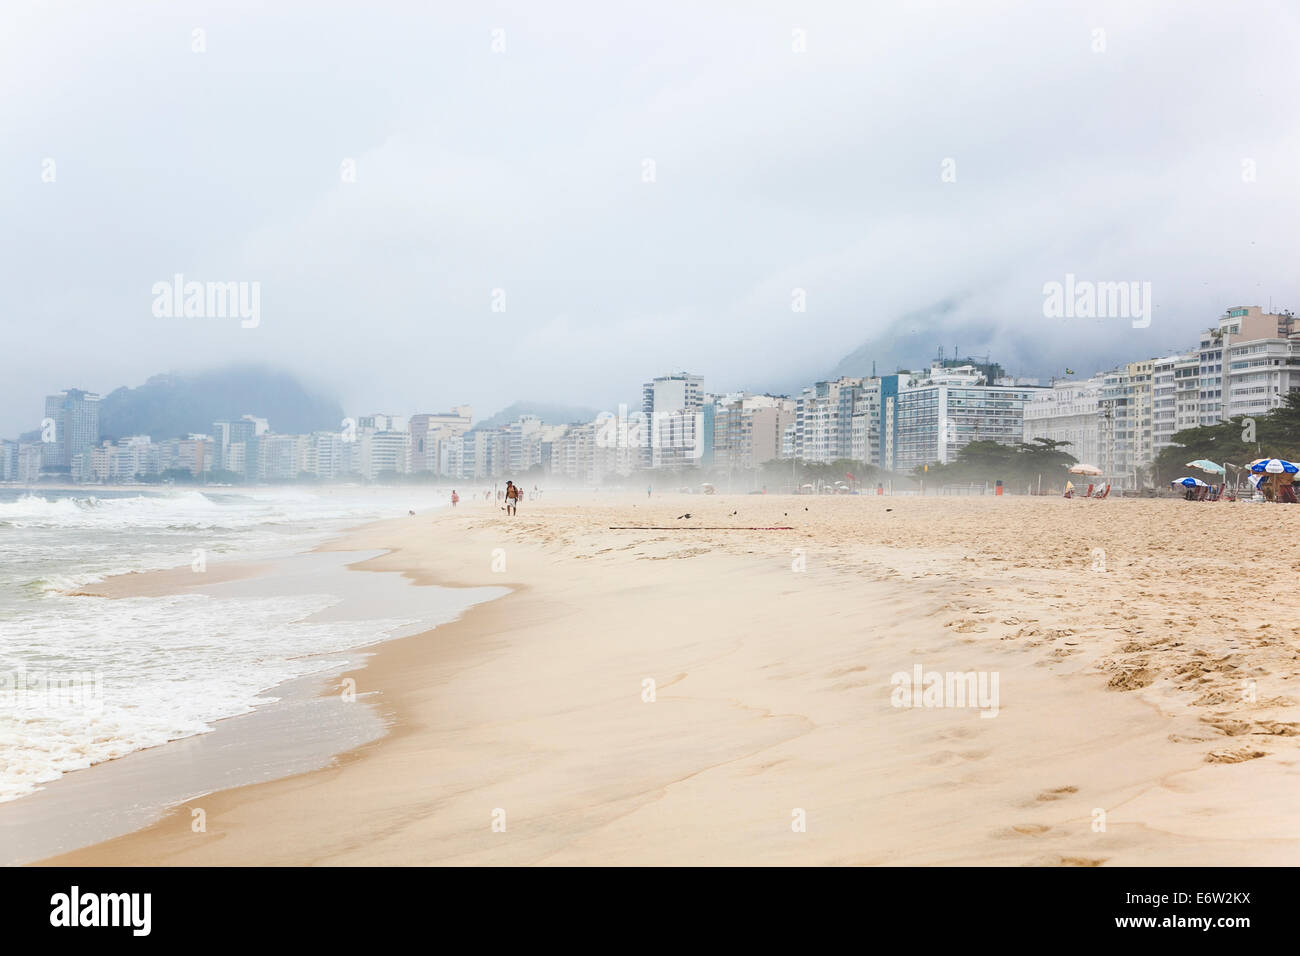 La plage de Copacabana, Rio de Janeiro, Brésil Banque D'Images